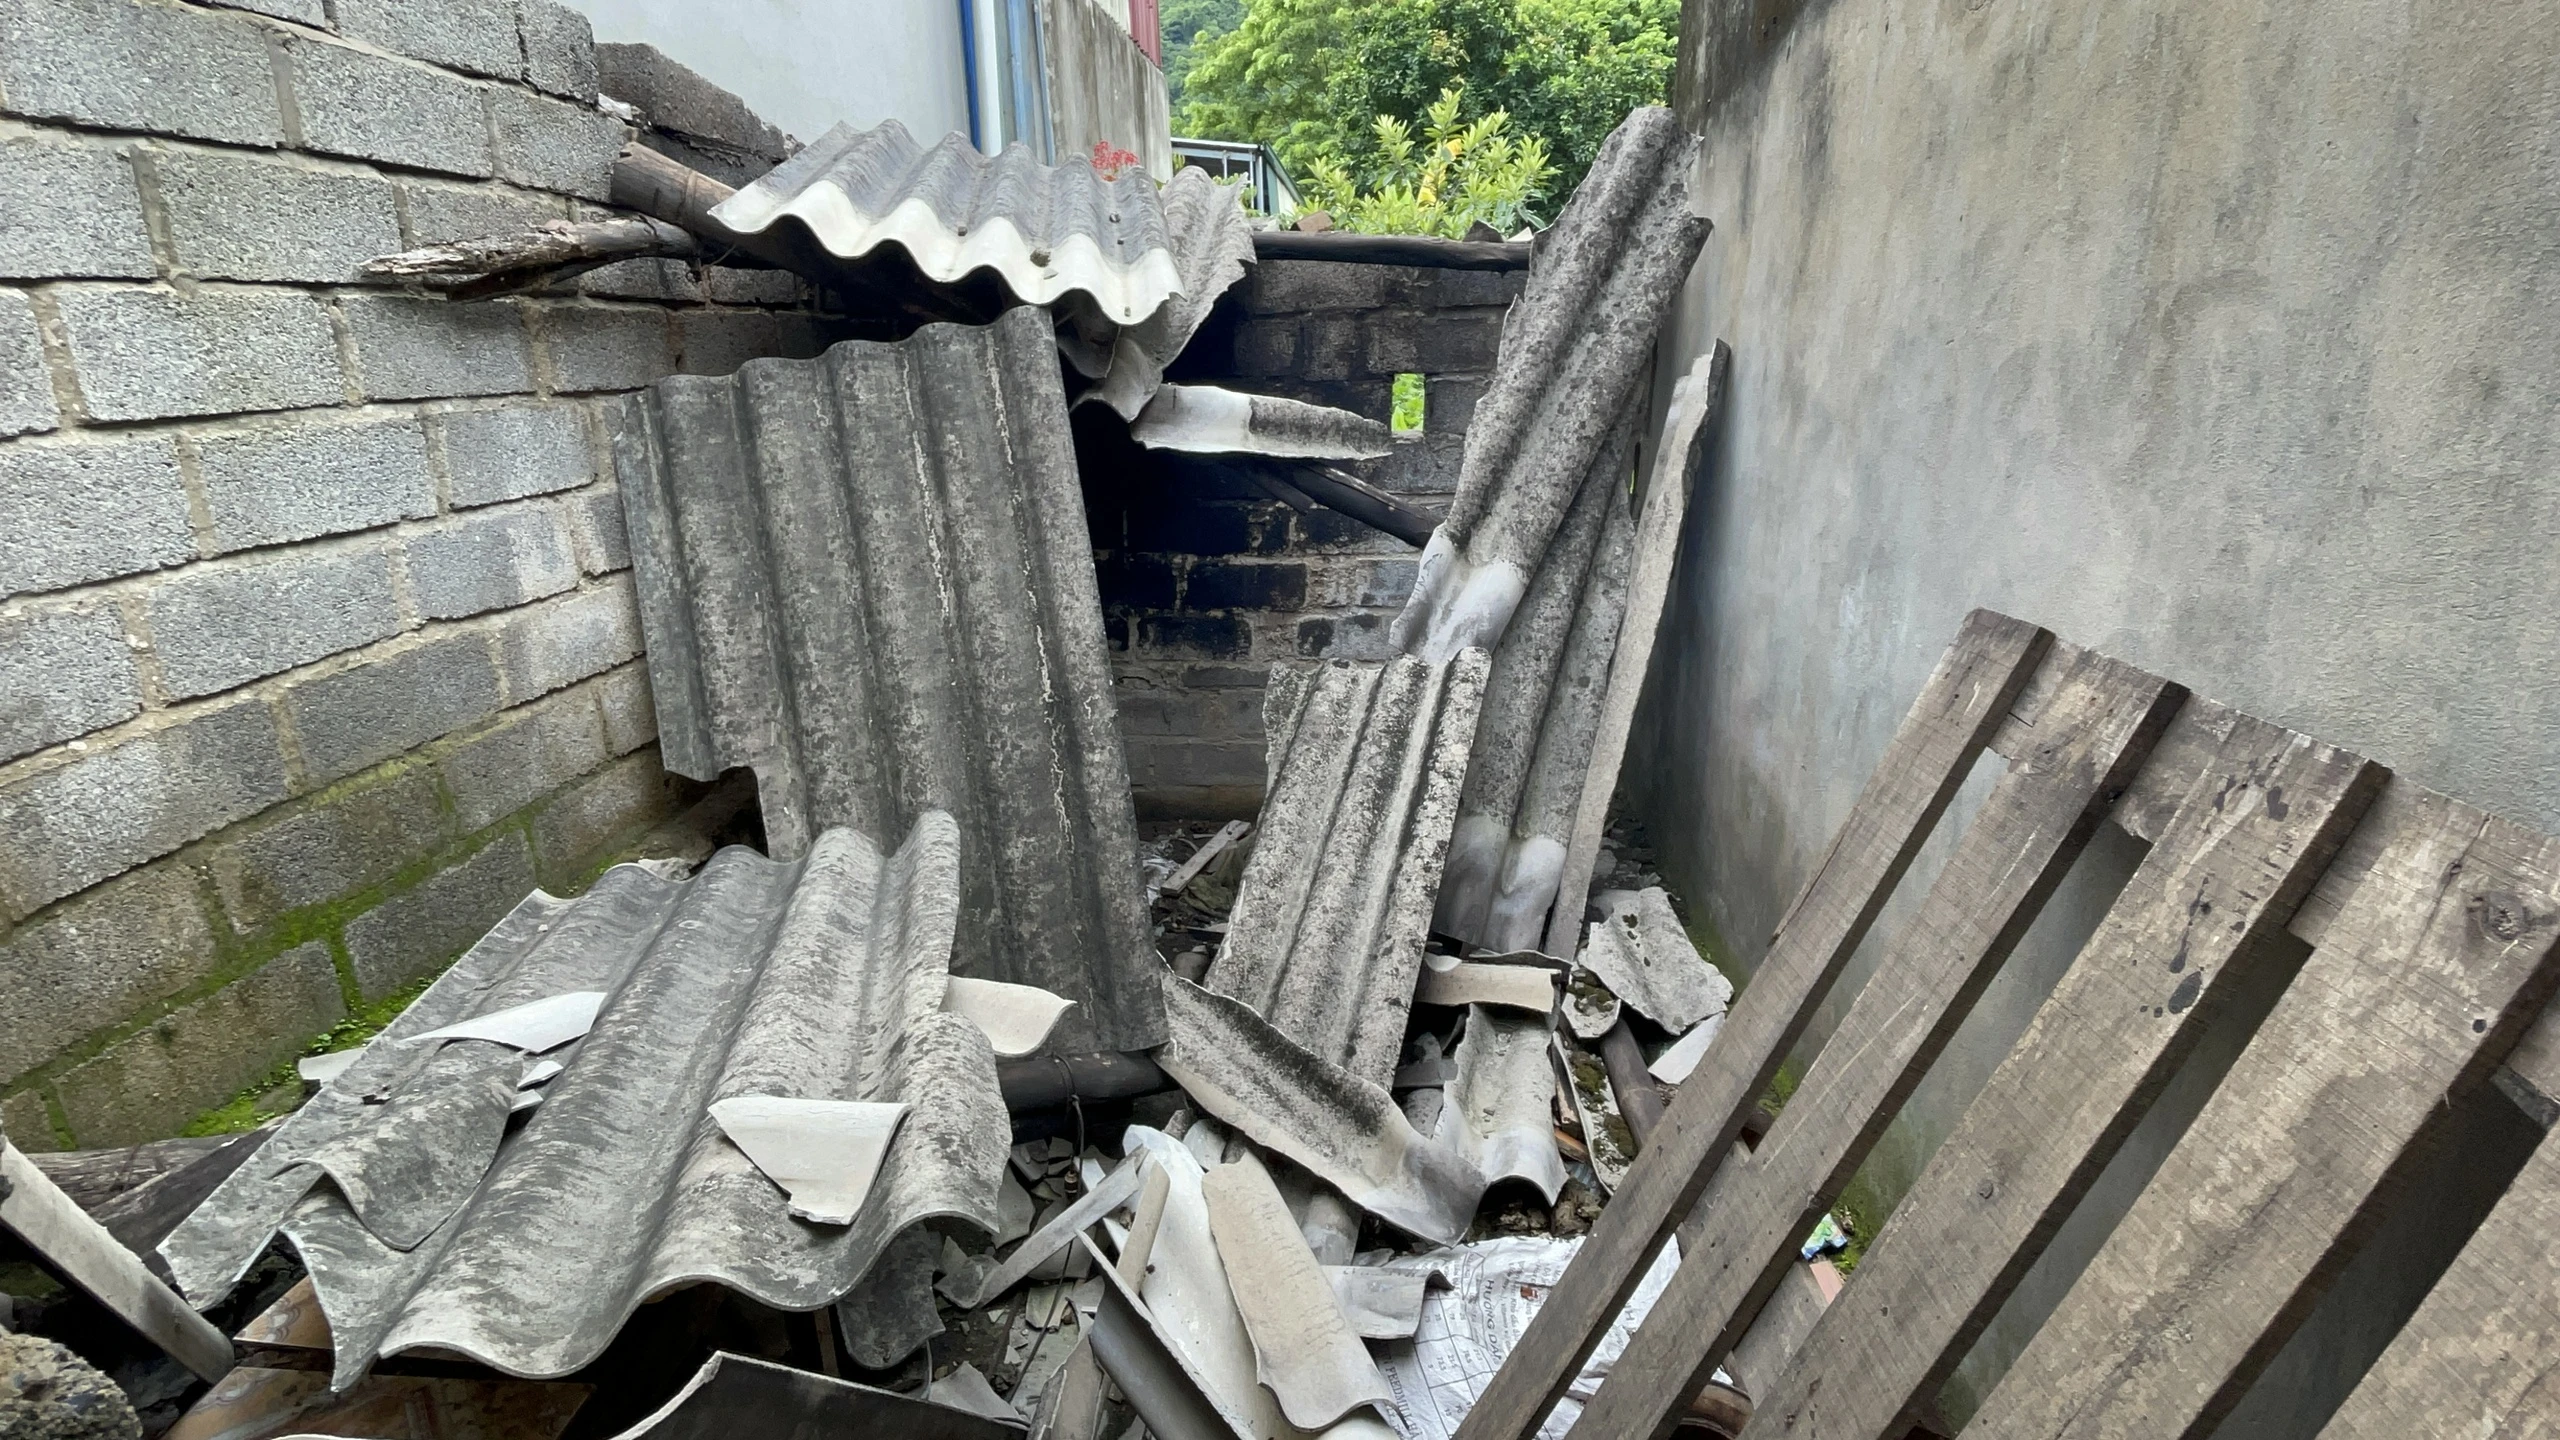 ”Ác mộng” của người dân gần khu nổ mìn khai thác đá: Trong nhà như động đất